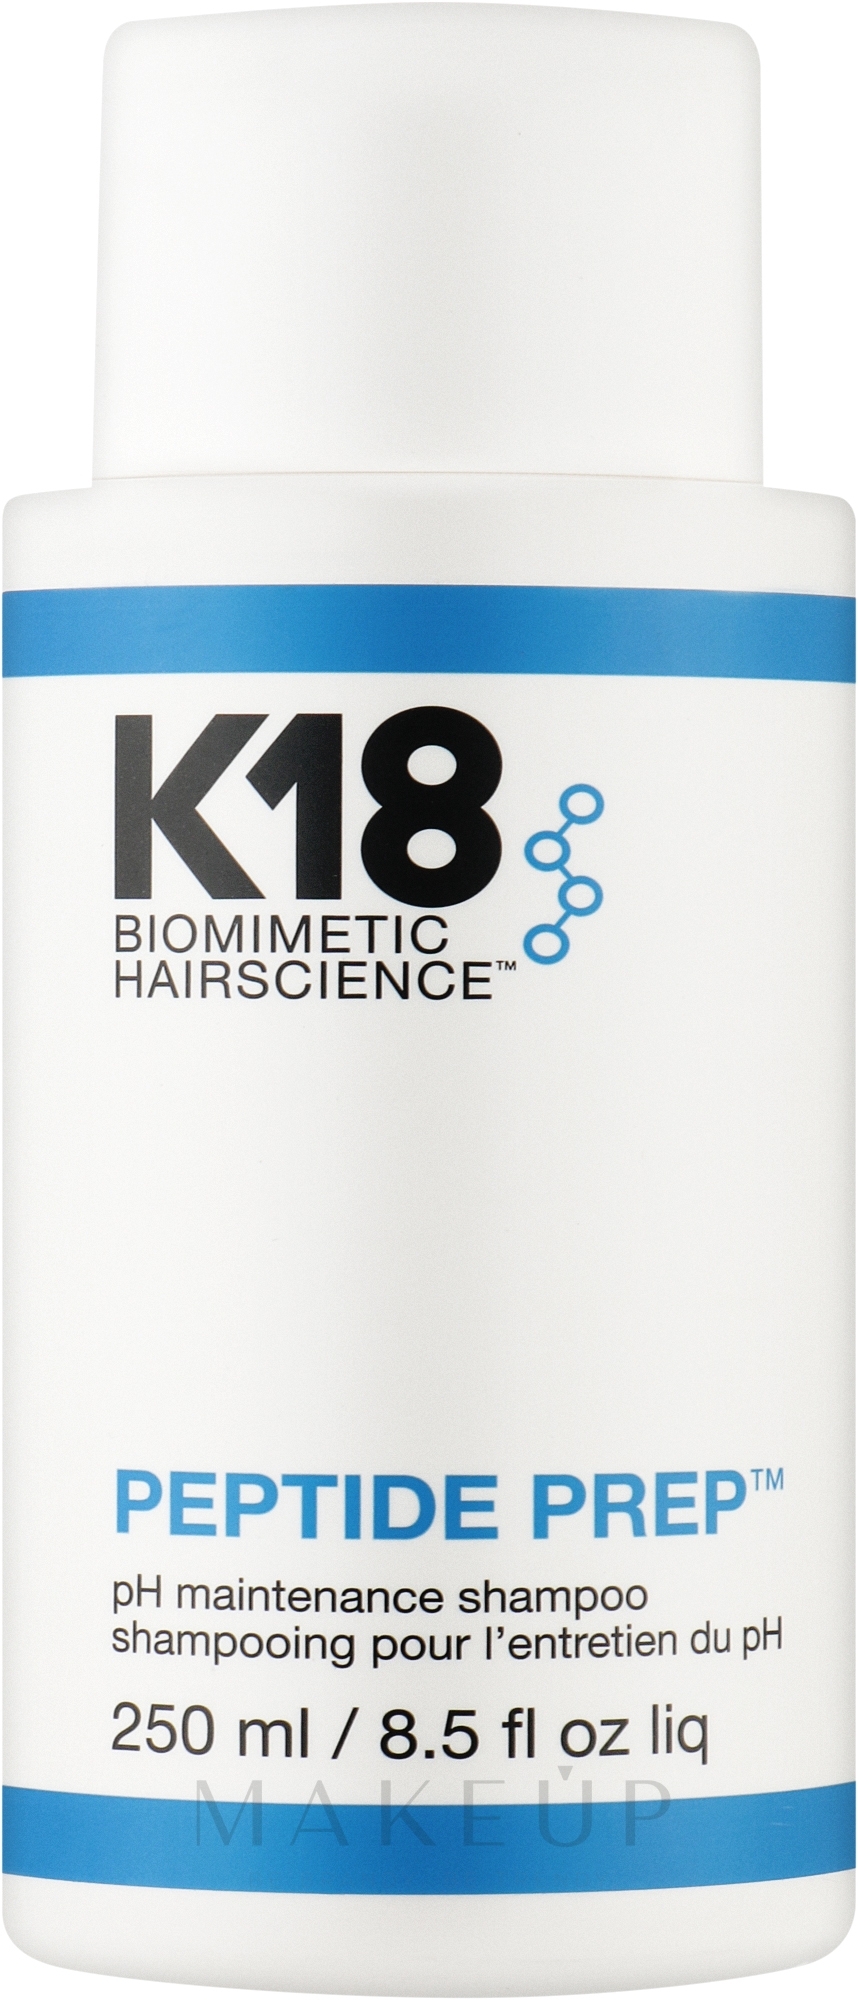 Shampoo für häufigen Gebrauch - K18 Hair Biomimetic Hairscience Peptide Prep PH Shampoo — Bild 250 ml